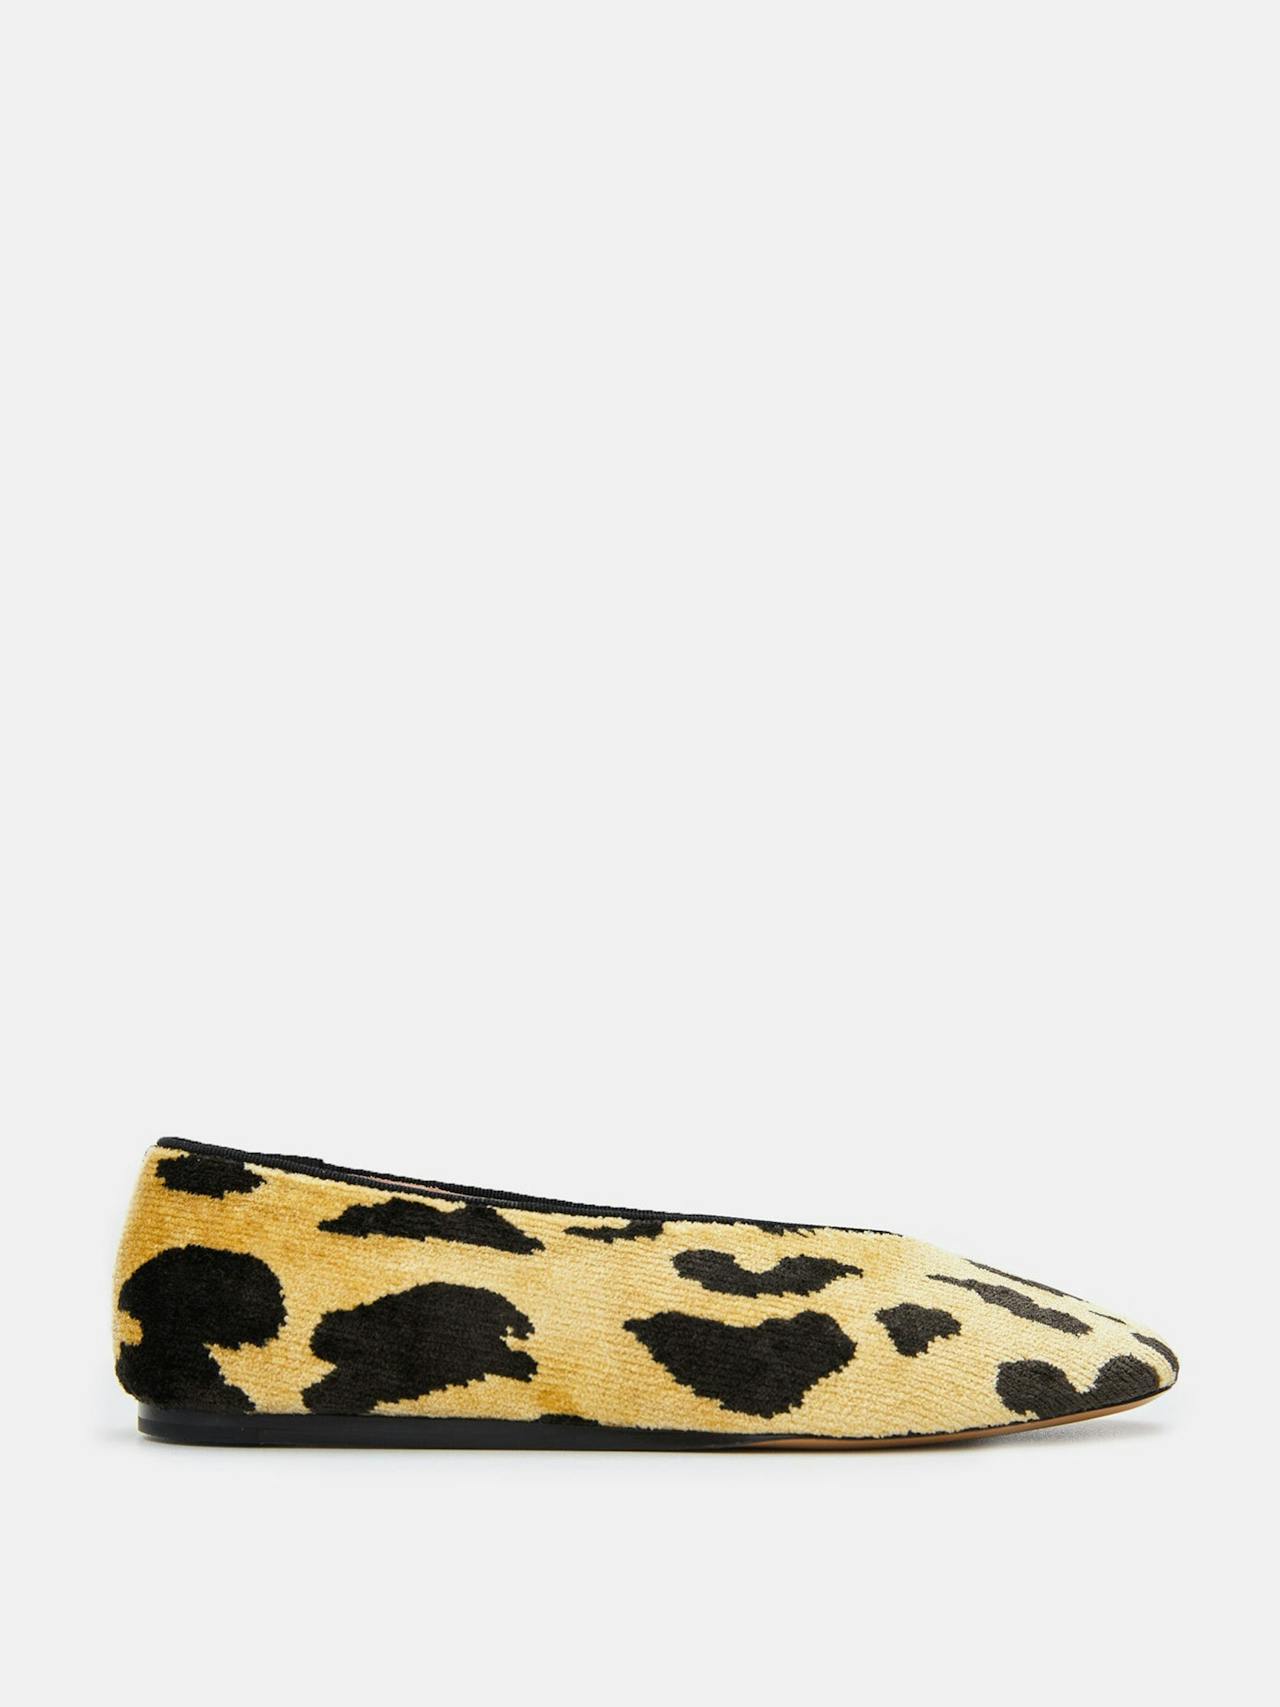 Leopard print Bevilacqua velvet regency slippers